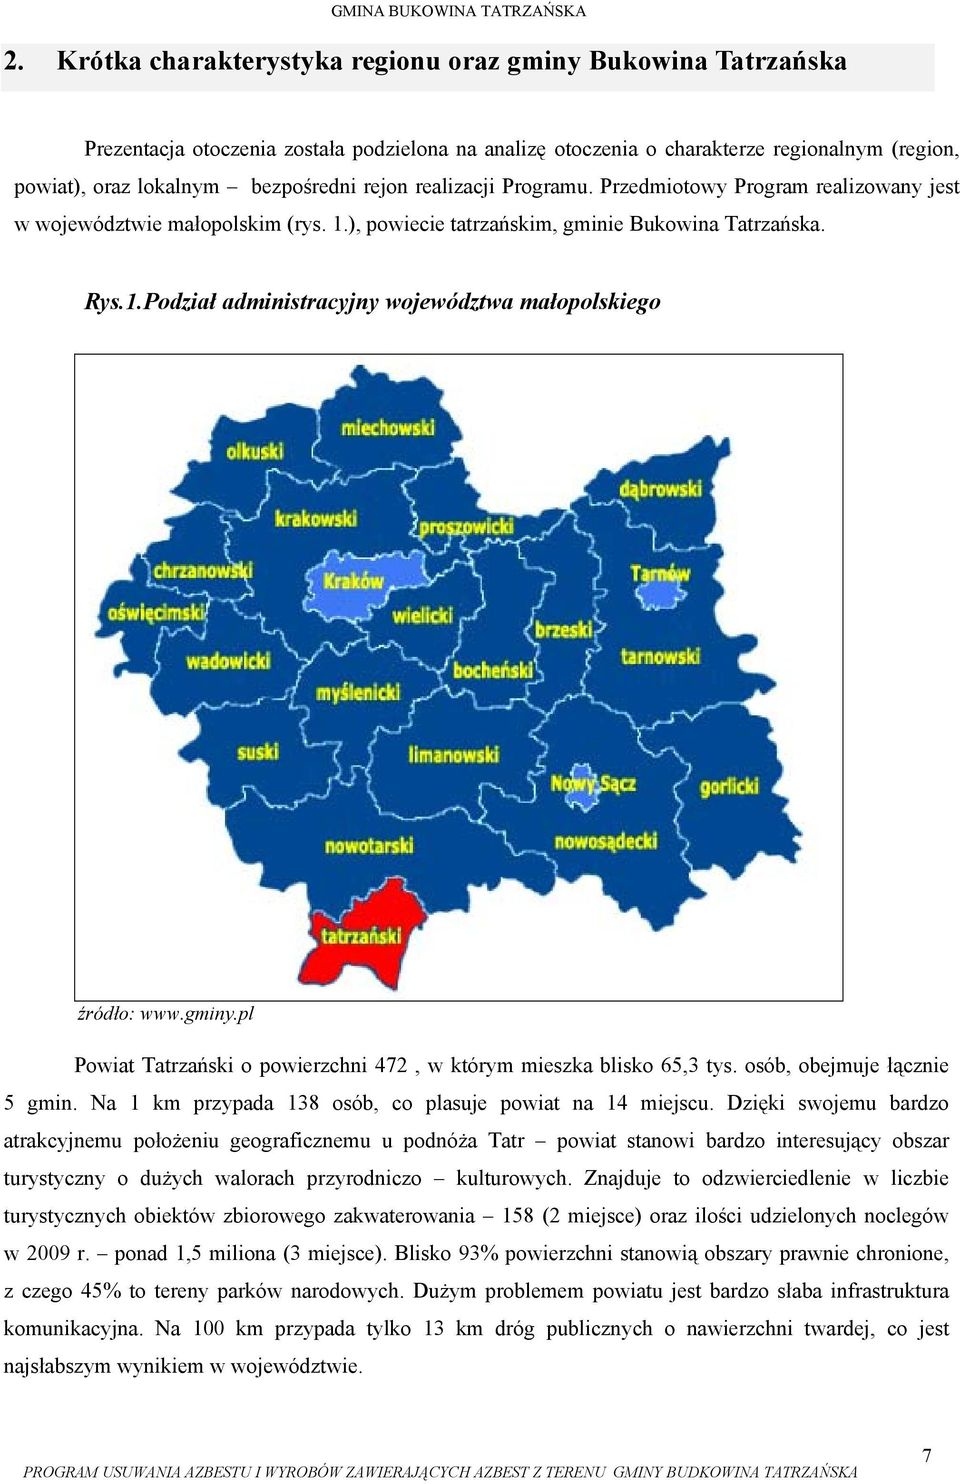 gminy.pl Powiat Tatrzański o powierzchni 472, w którym mieszka blisko 65,3 tys. osób, obejmuje łącznie 5 gmin. Na 1 km przypada 138 osób, co plasuje powiat na 14 miejscu.